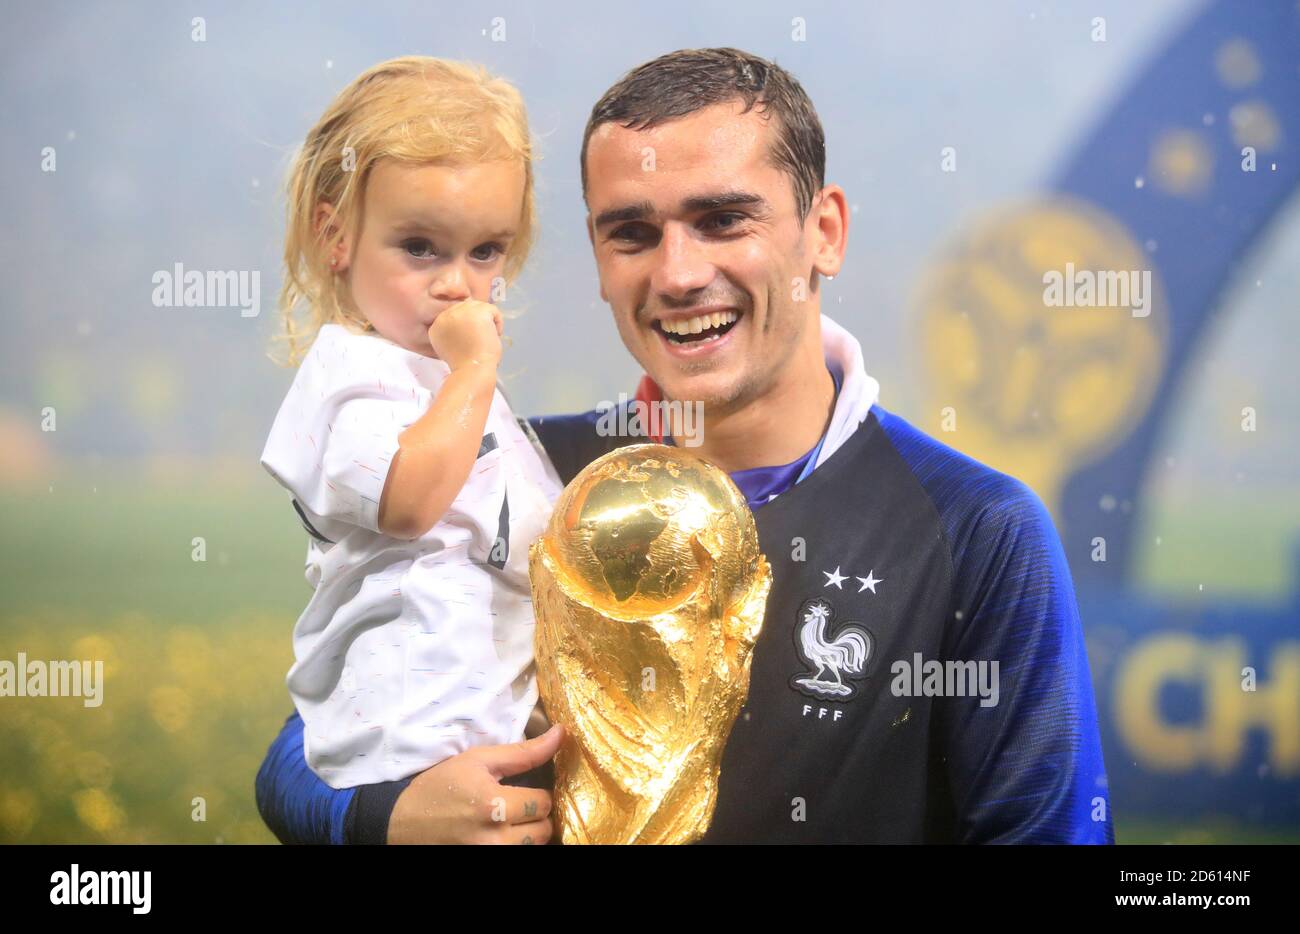 Antoine Griezmann en France fête avec sa fille Mia Griezmann et le Trophée après que la France remporte la coupe du monde de la FIFA 2018 Banque D'Images